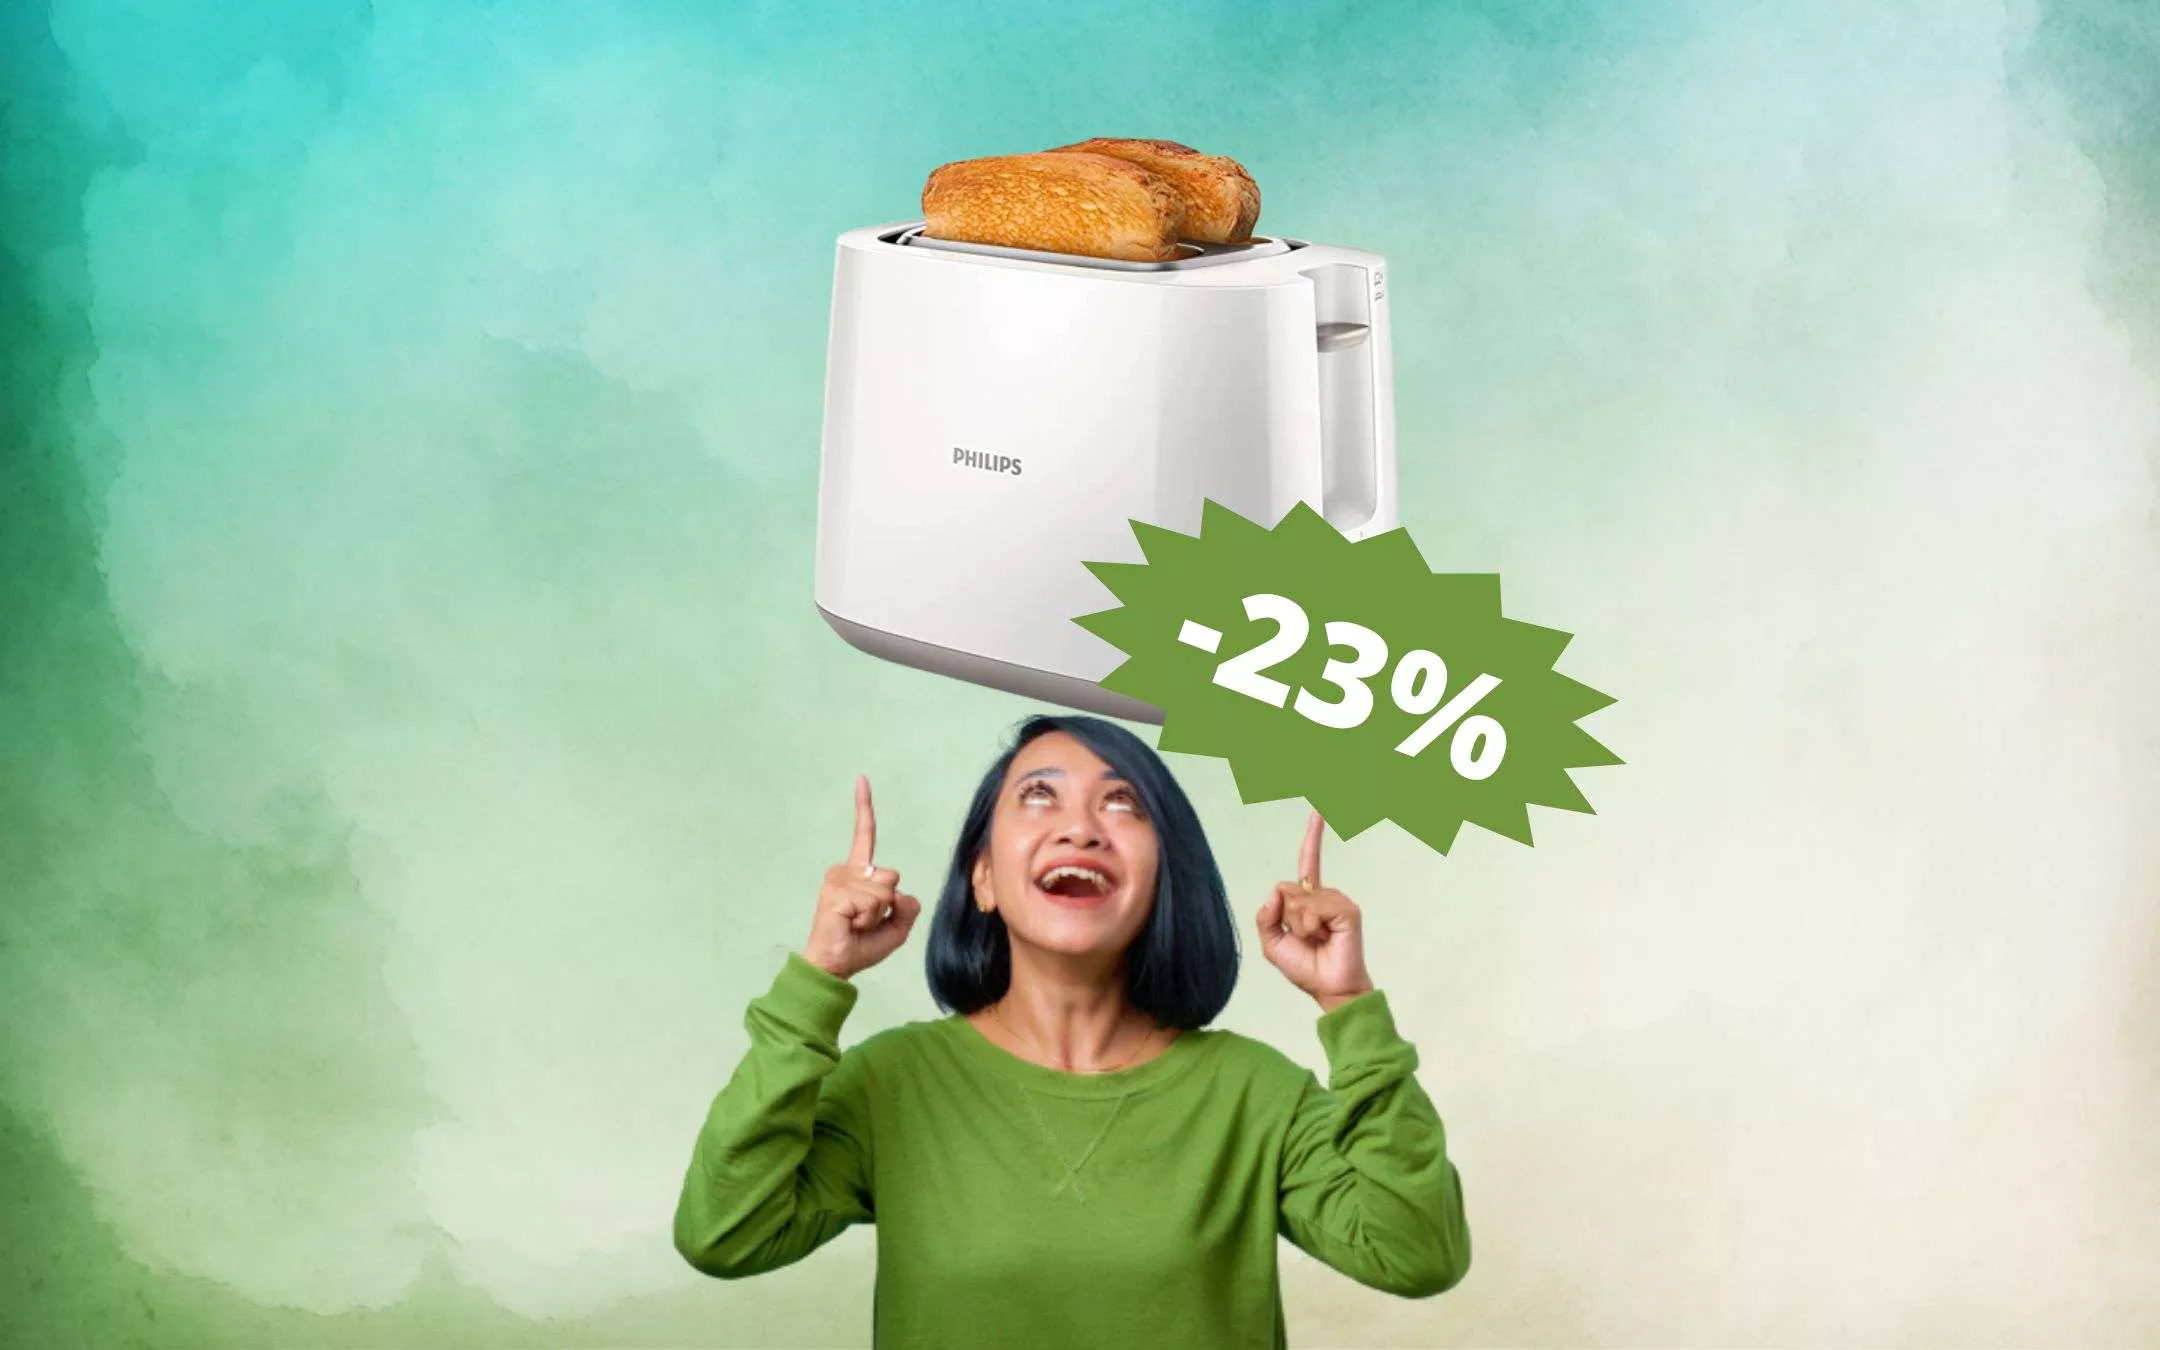 OCCASIONE di oggi: tostapane Philips al prezzo più CONVENIENTE di sempre  (26€) - Webnews